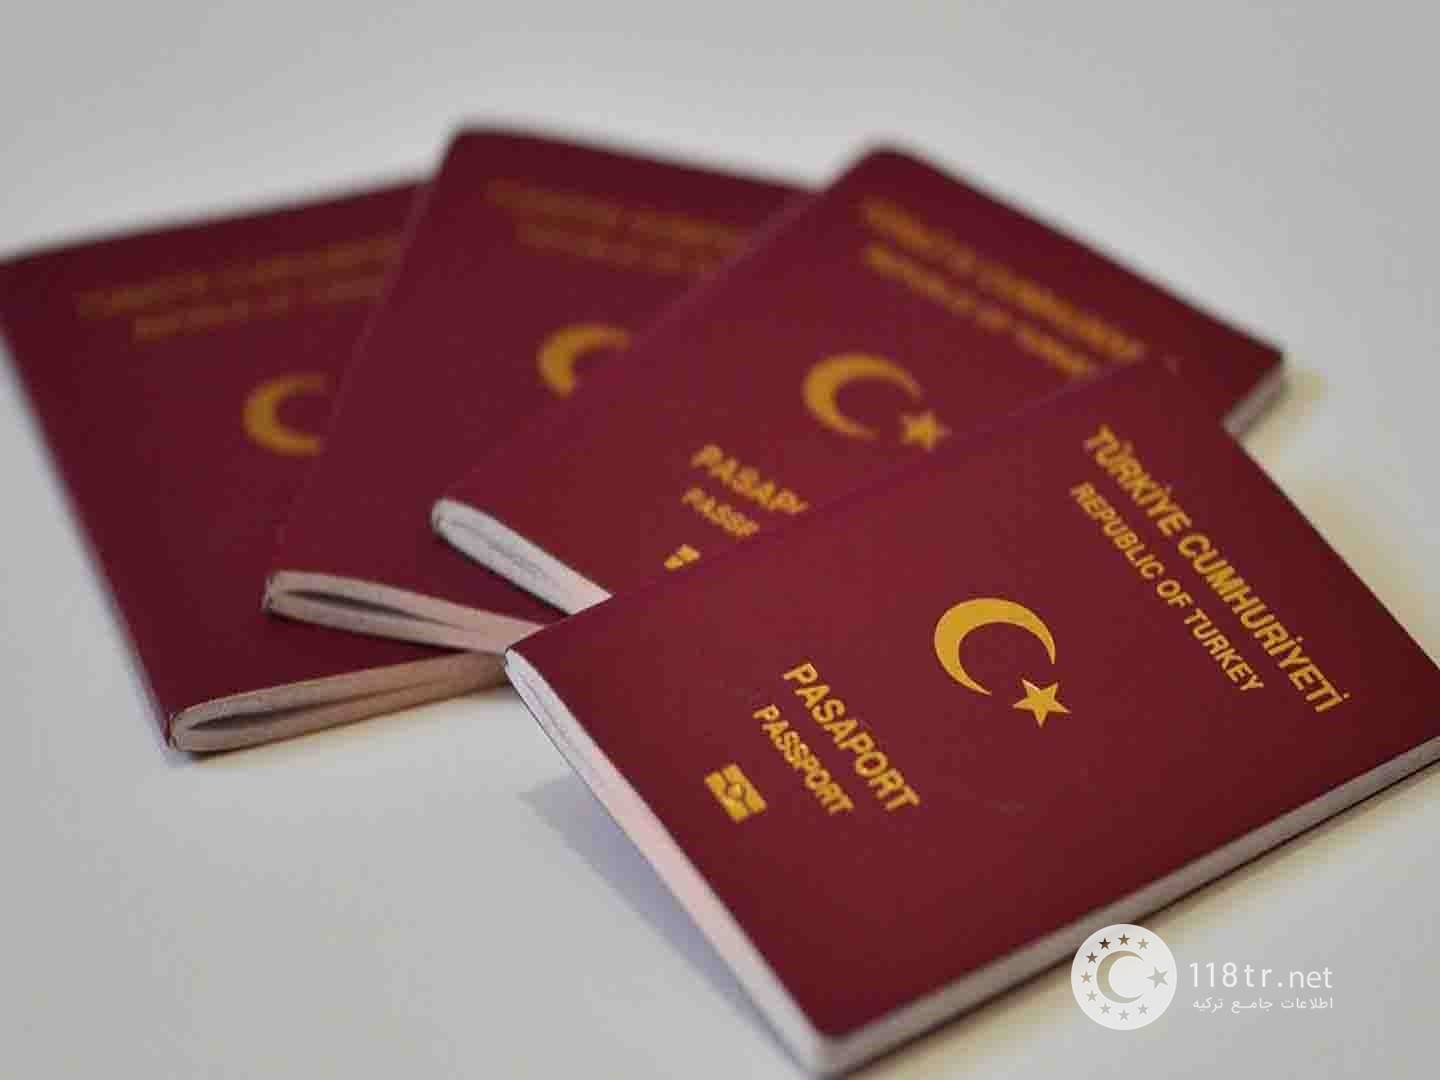 پاسپورت ترکیه و سفر به کشورهای بدون ویزا 15